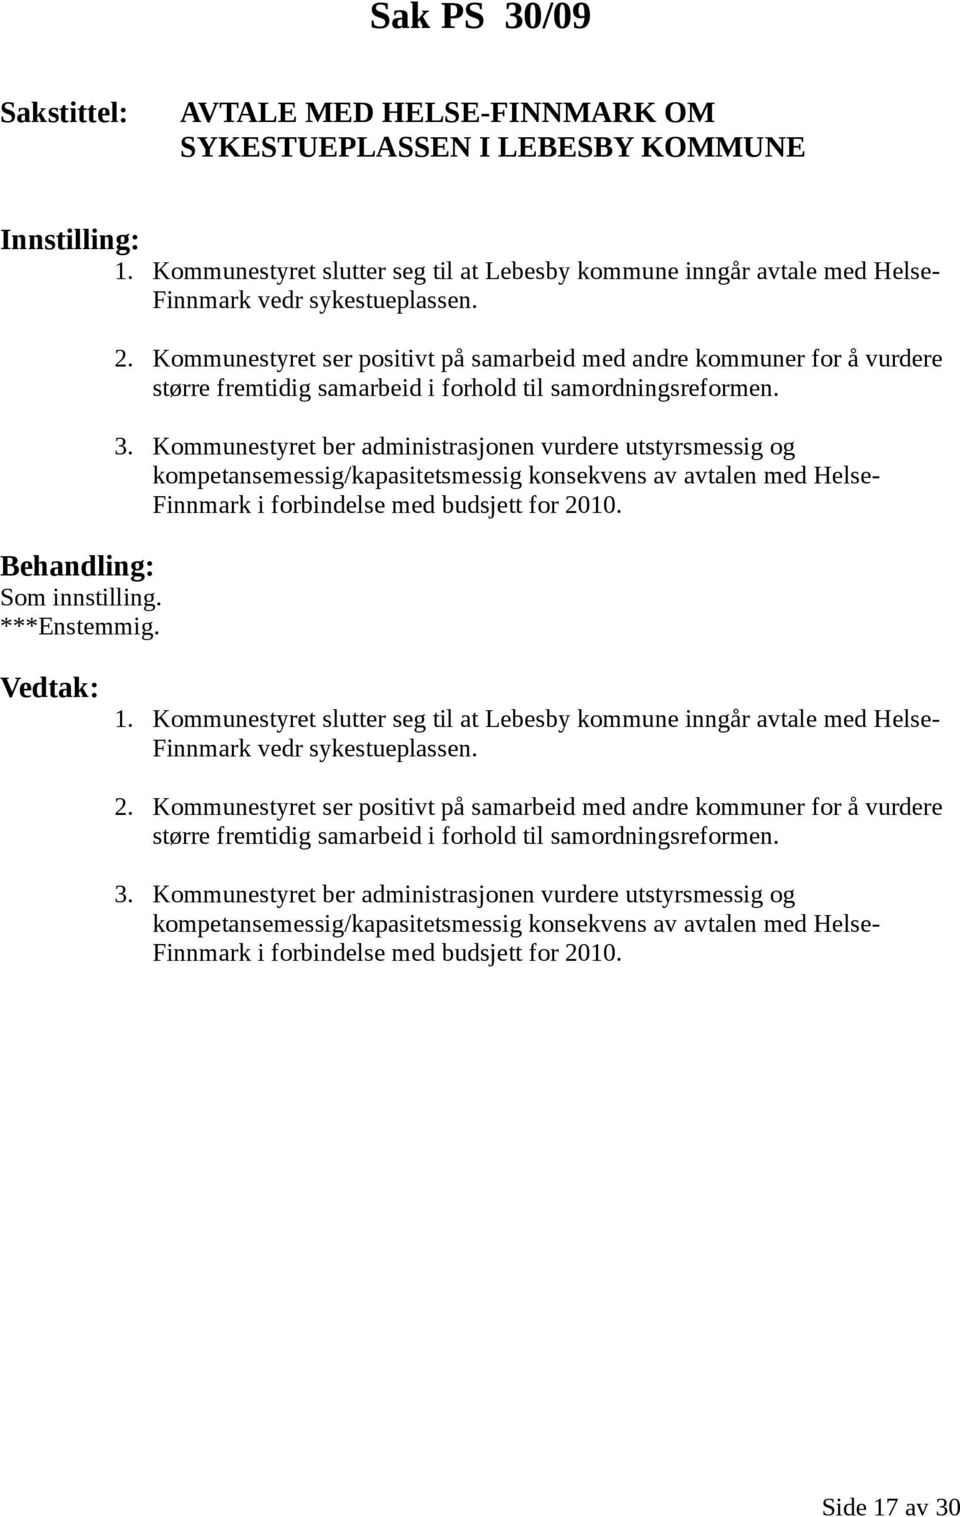 Kommunestyret ber administrasjonen vurdere utstyrsmessig og kompetansemessig/kapasitetsmessig konsekvens av avtalen med Helse- Finnmark i forbindelse med budsjett for 2010. 1.